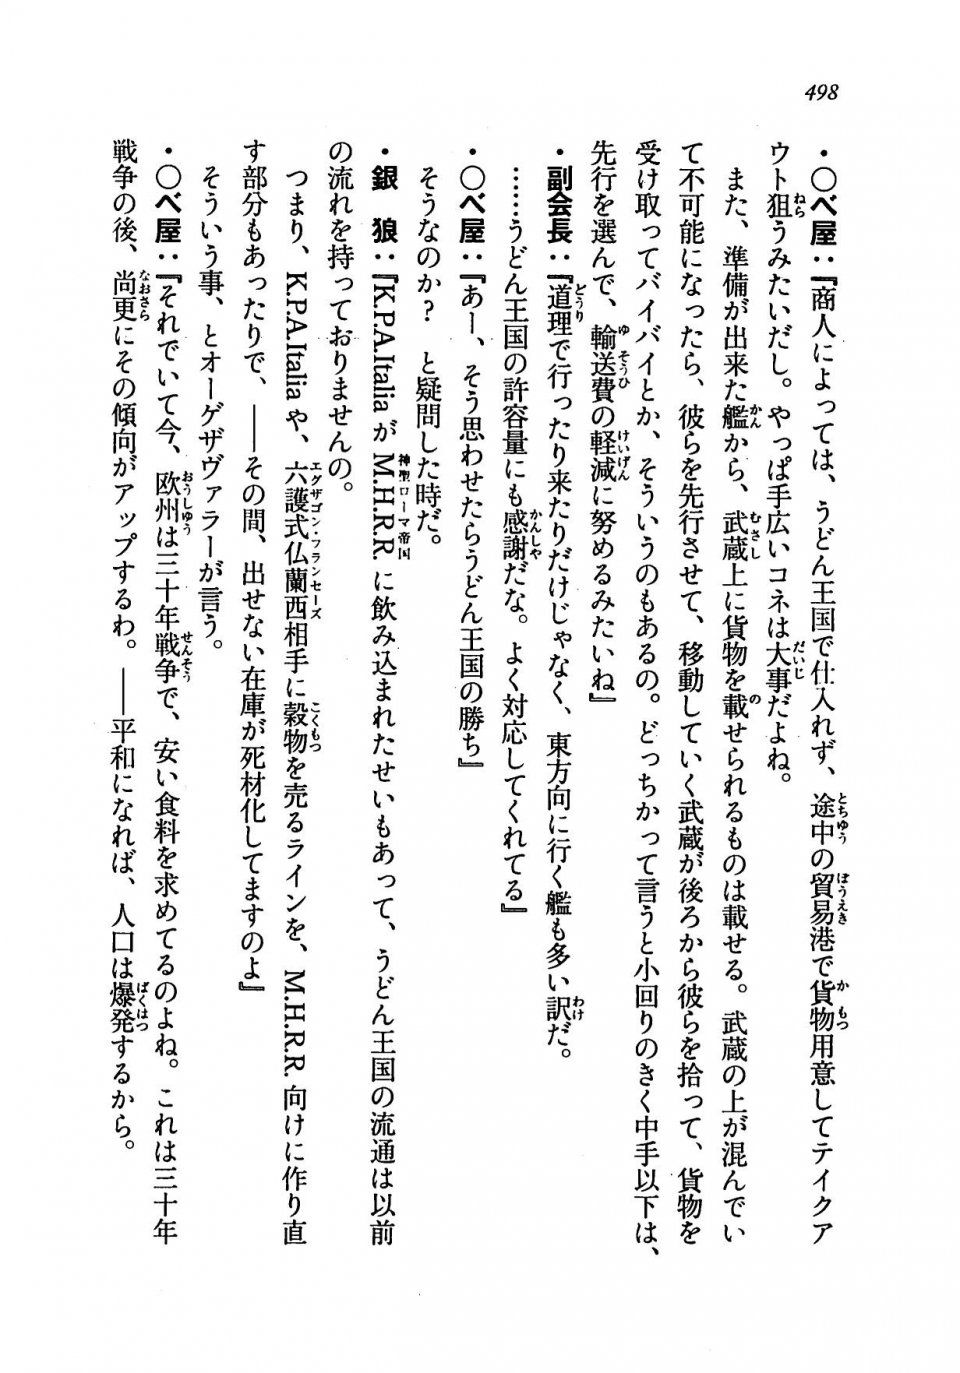 Kyoukai Senjou no Horizon LN Vol 19(8A) - Photo #498